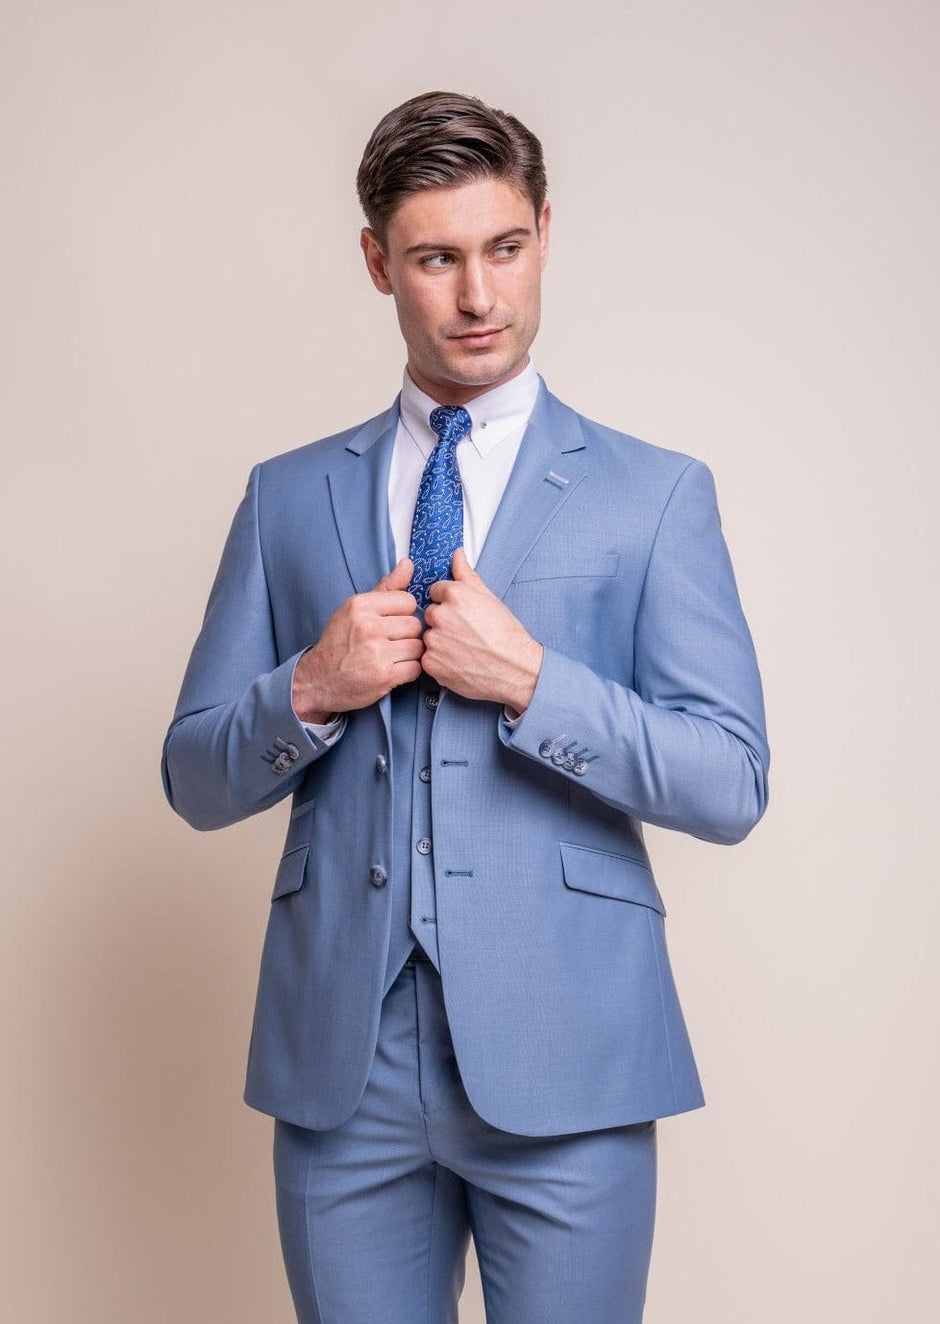 Men's Wedding Suits for Groom, Best Man & Guests | Menz Suits